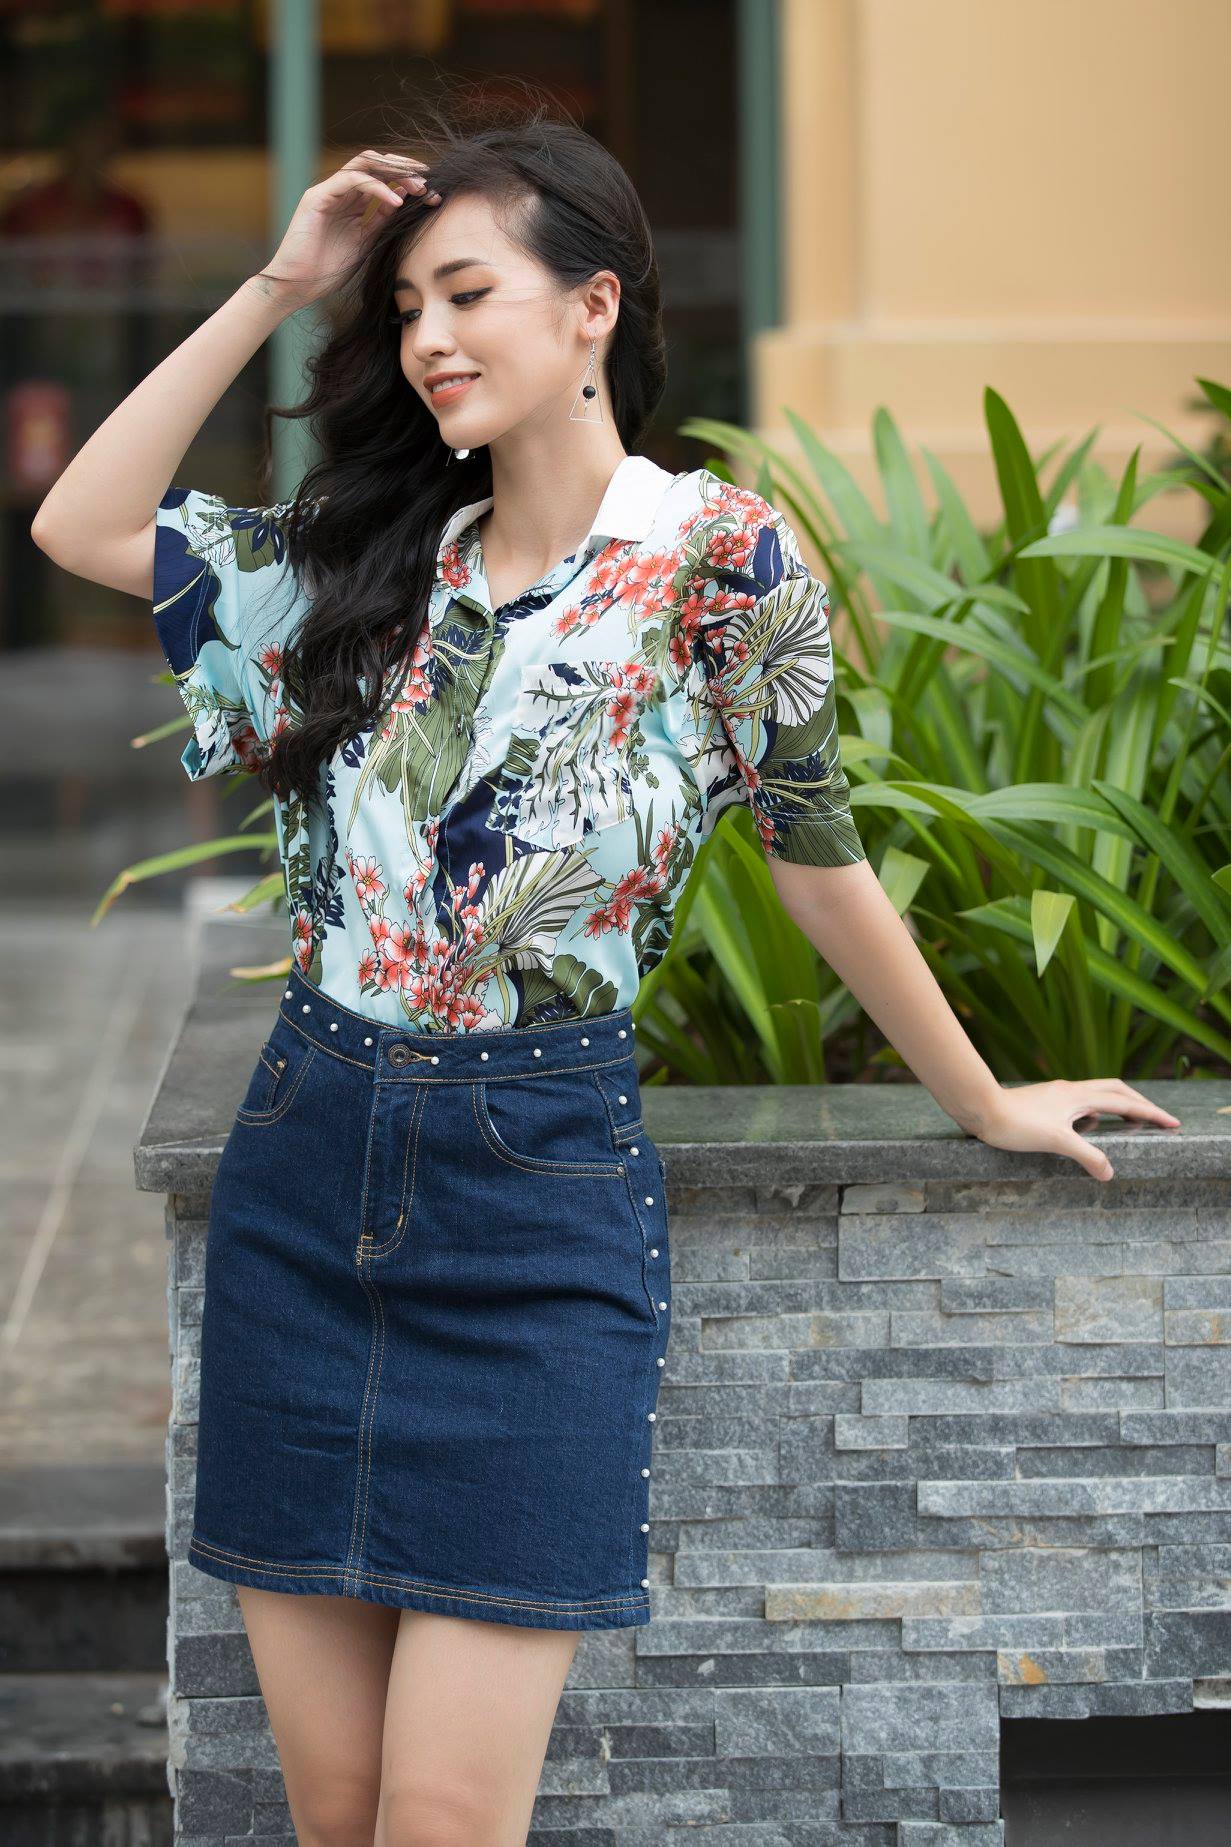 shop bán áo sơ mi nữ đẹp nhất Đà Nẵng